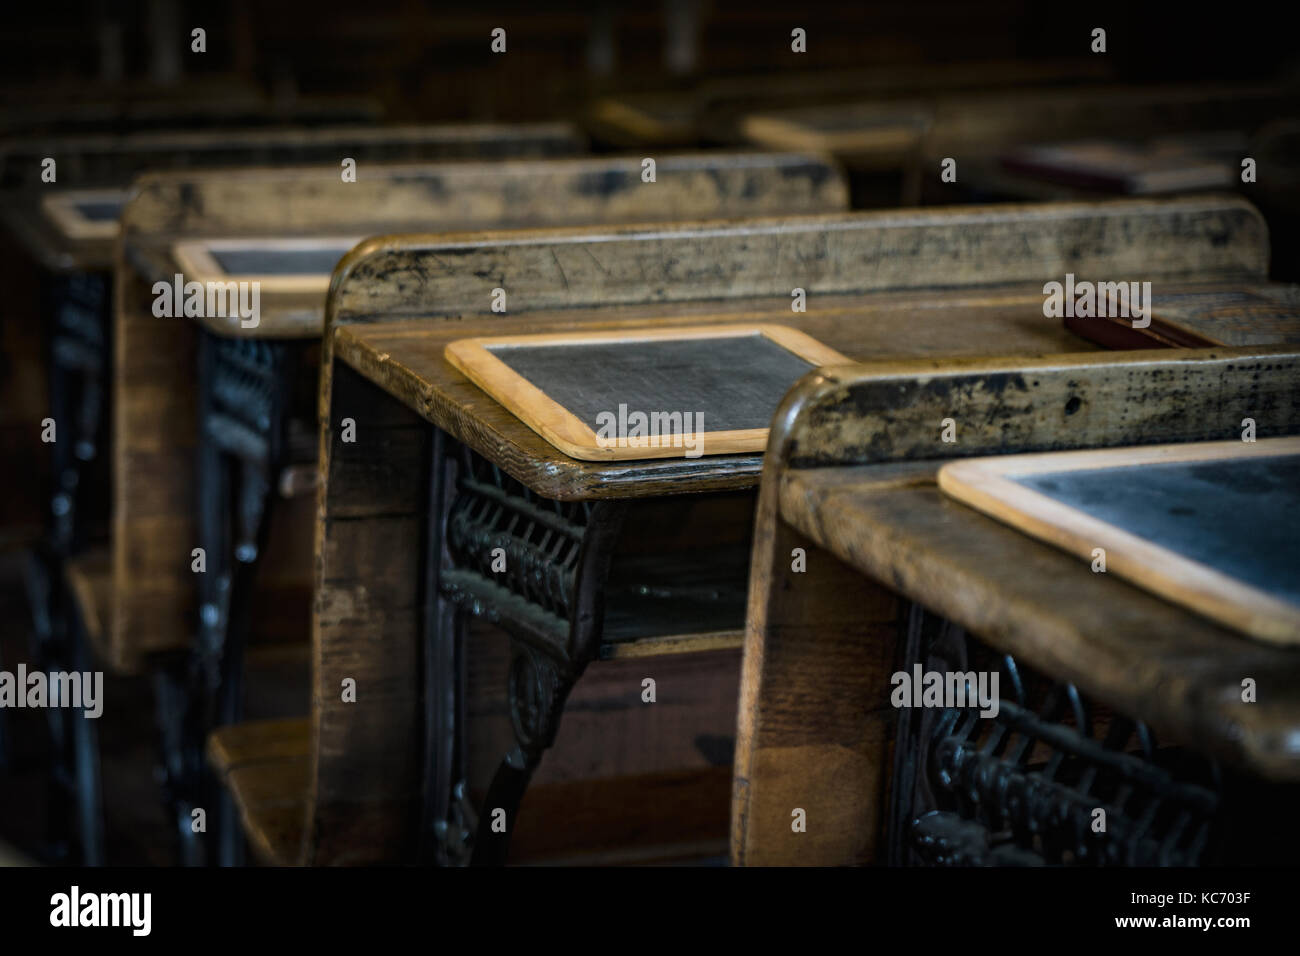 Desks in old school Stock Photo